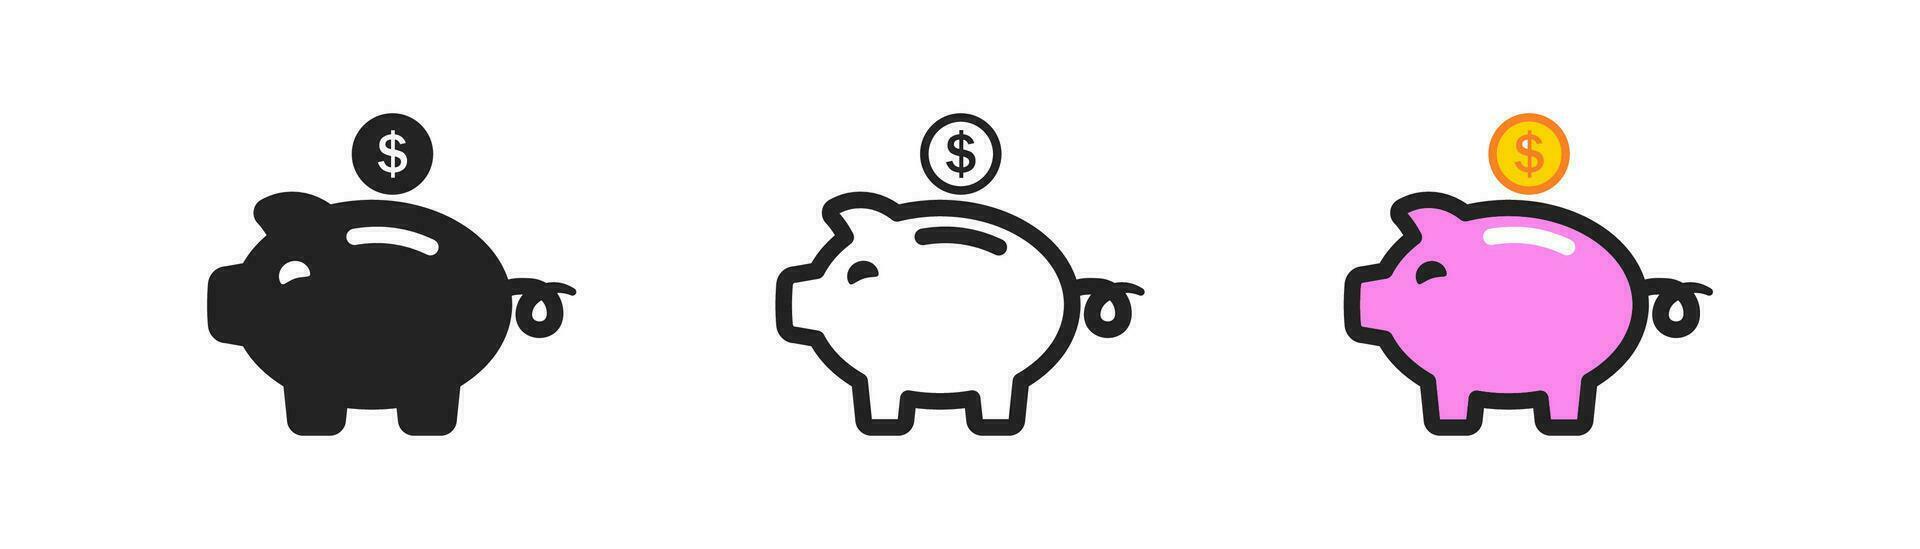 Rosa porquinho banco ícone em branco fundo. cofrinho dentro plano estilo. investimento conceito. Salve  dinheiro, inflação, global economia crise, negócios, símbolo. vetor